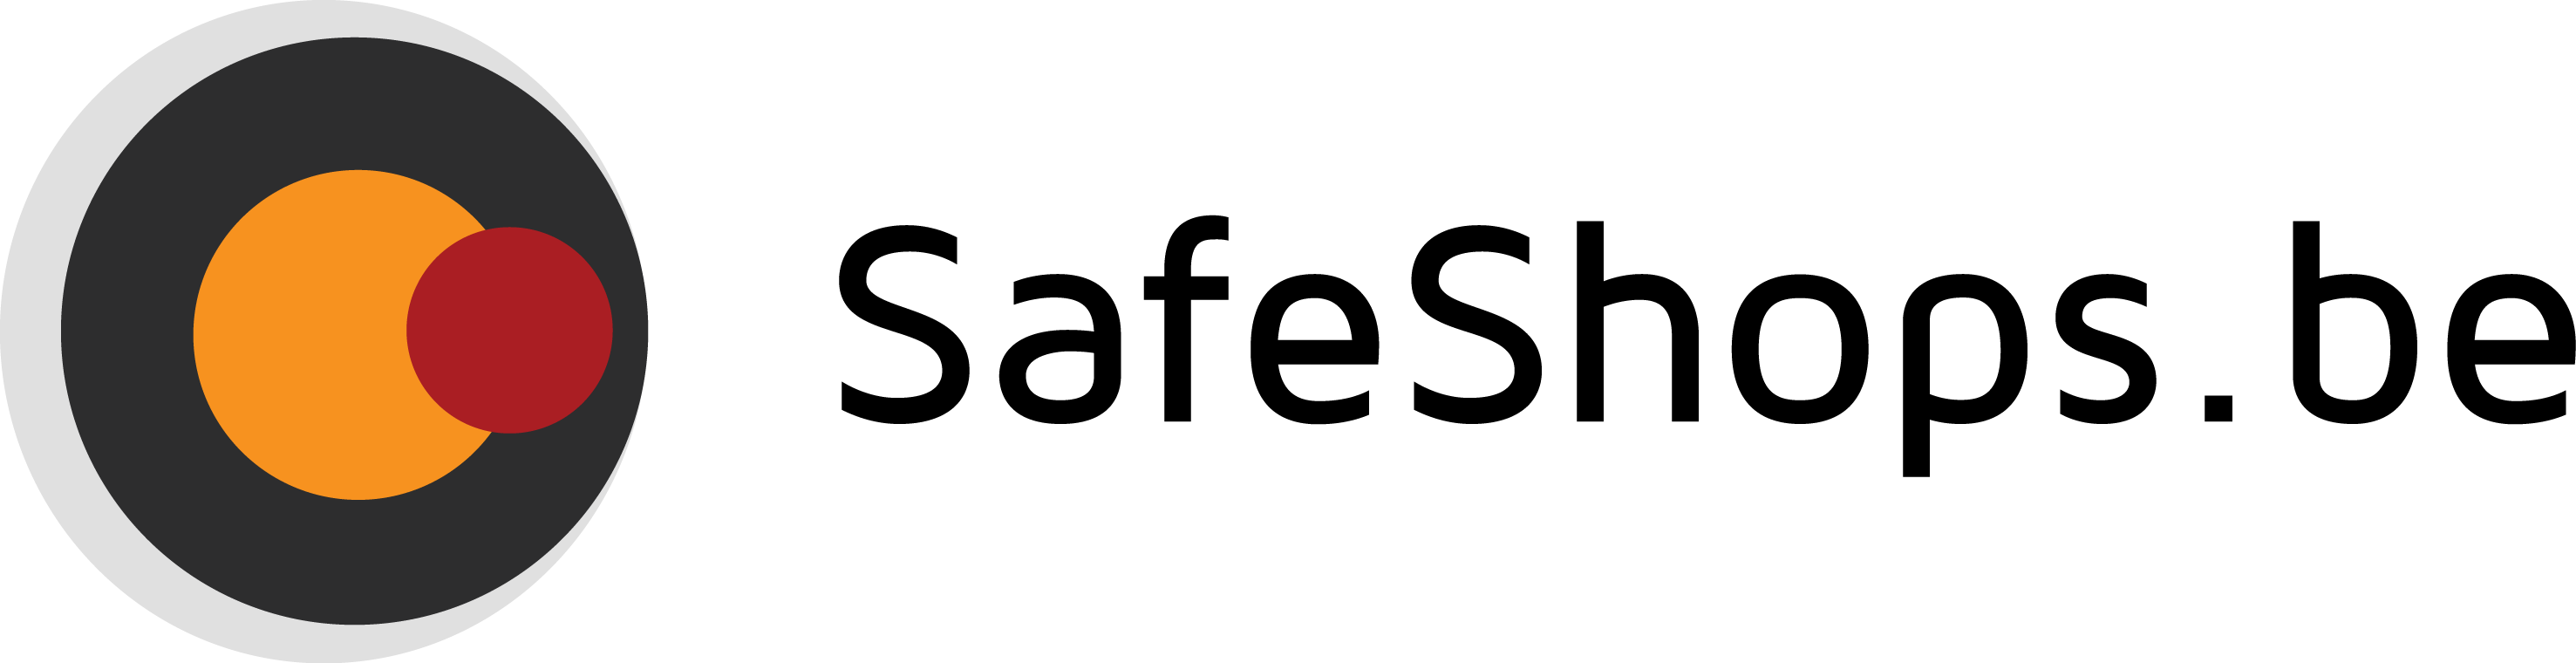 logo safeshops